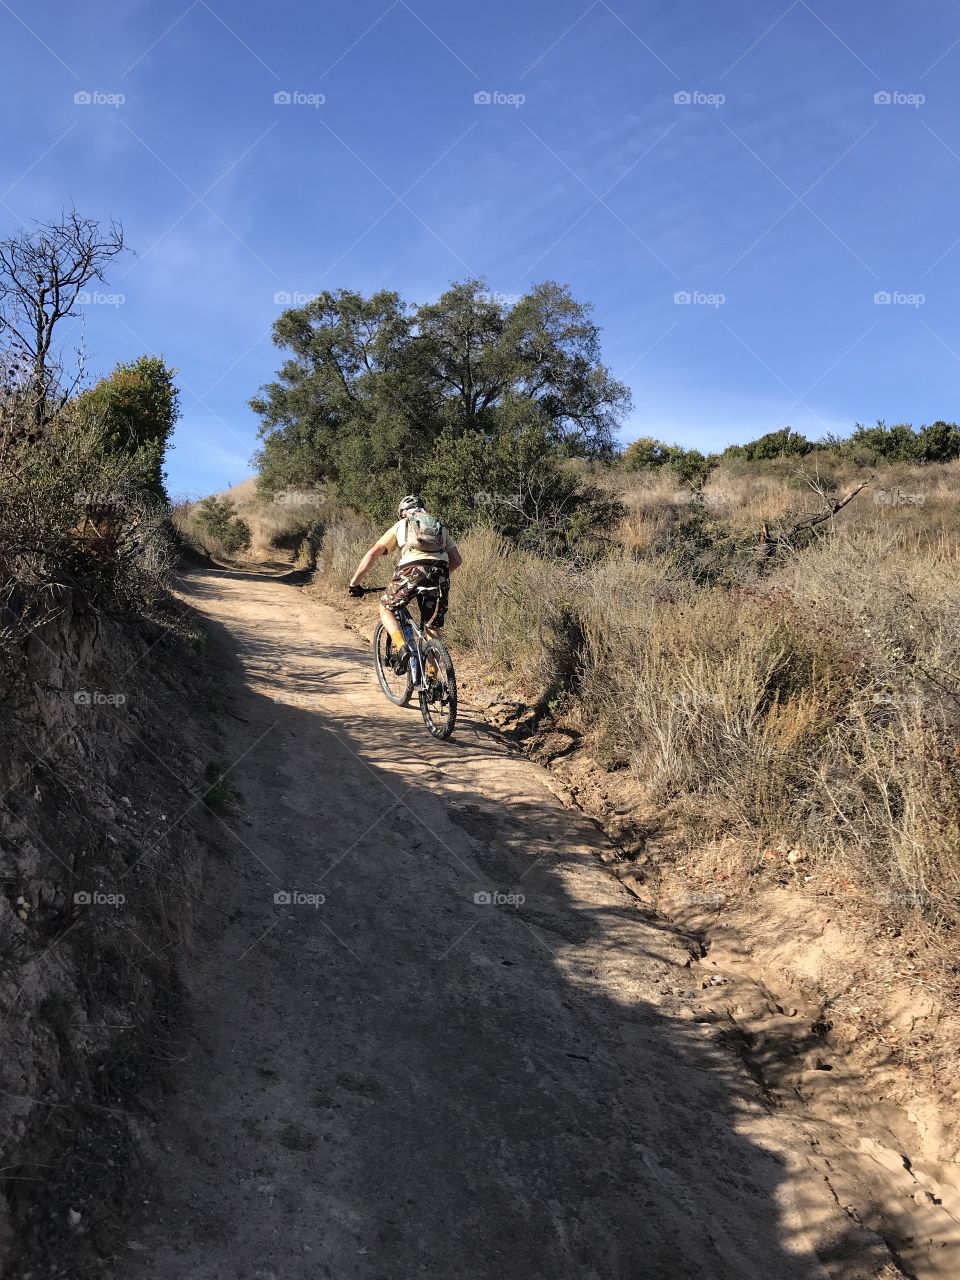 Mountain Biking on the Trail 